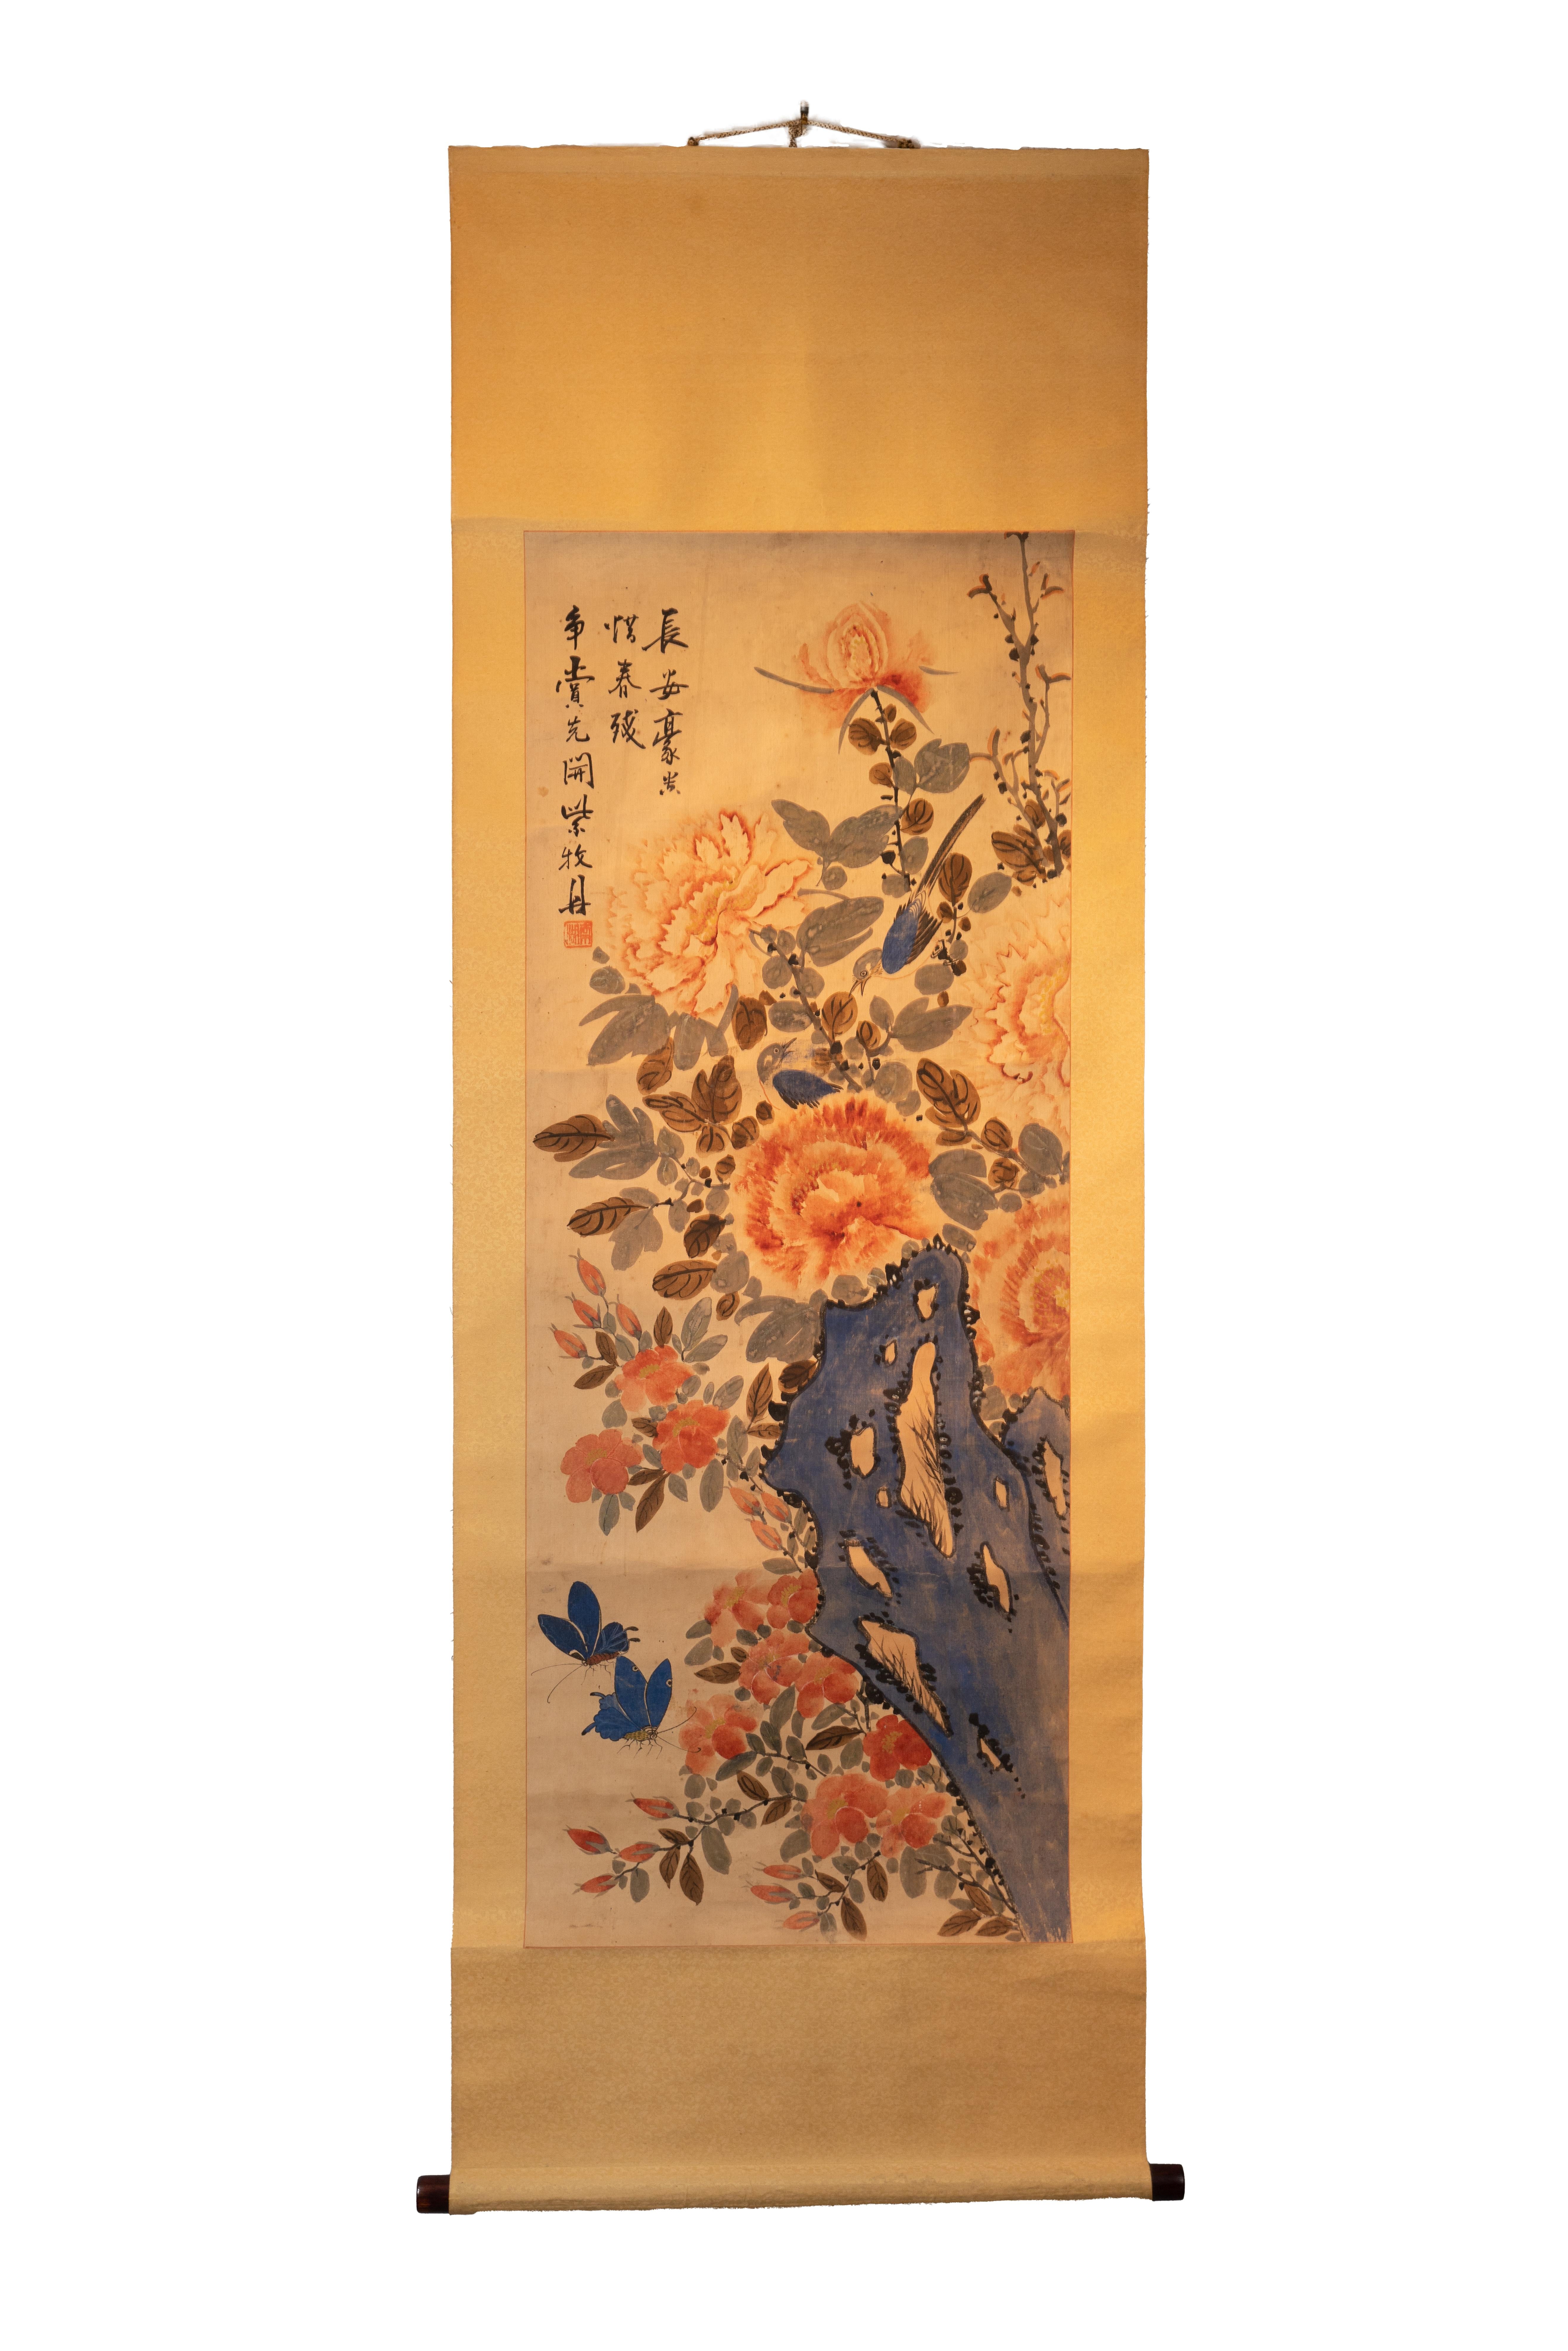 Ce rouleau chinois ancien signé de 23" x 21" présente un motif de fleurs roses épanouies à côté de deux papillons bleus. La calligraphie est inscrite dans le coin supérieur gauche. 